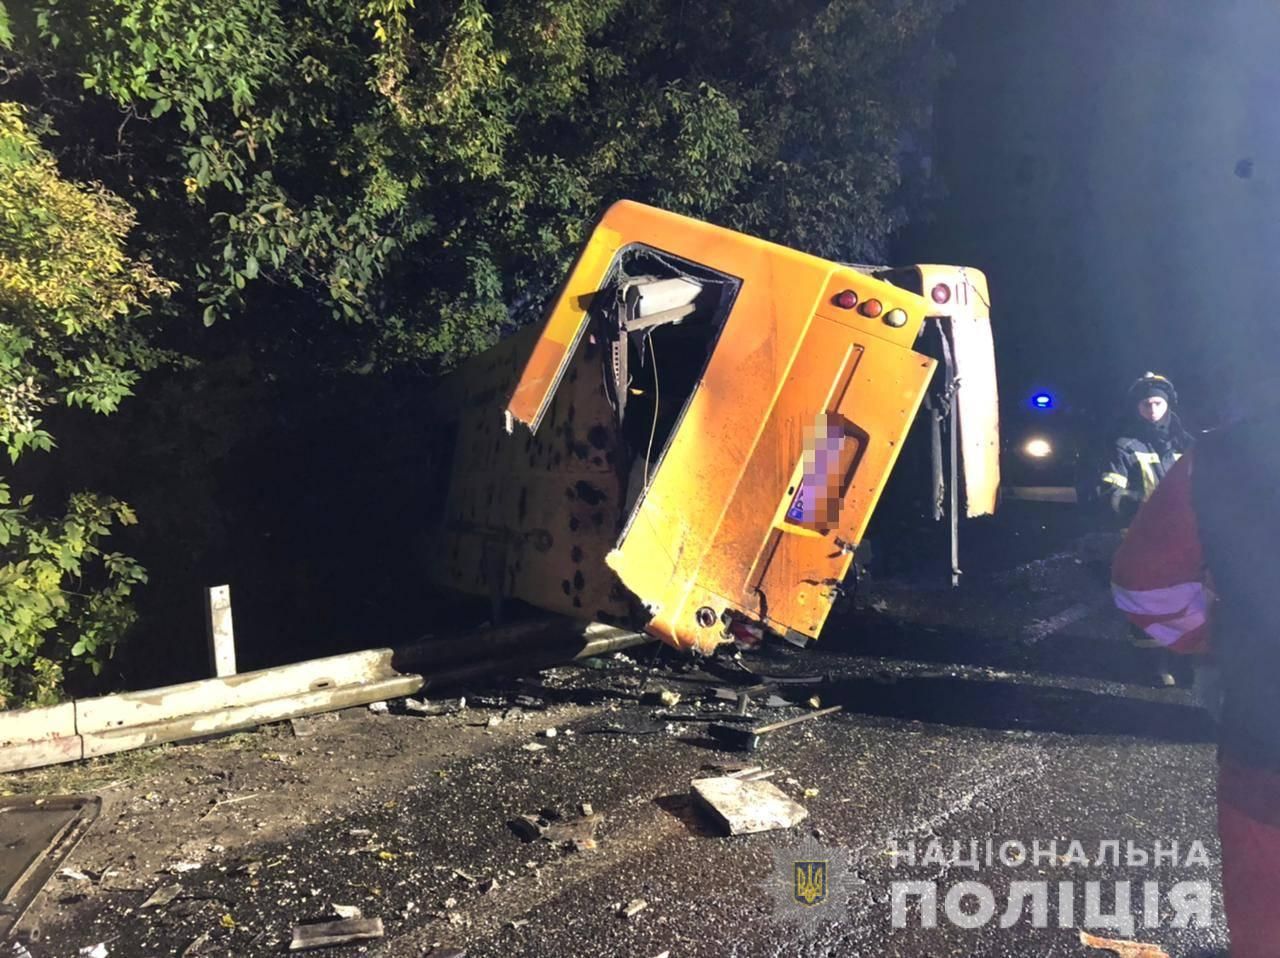 Вантажівка врізалася в рейсовий автобус на Одещині: 2 пасажири загинули - Україна новини - 24 Канал